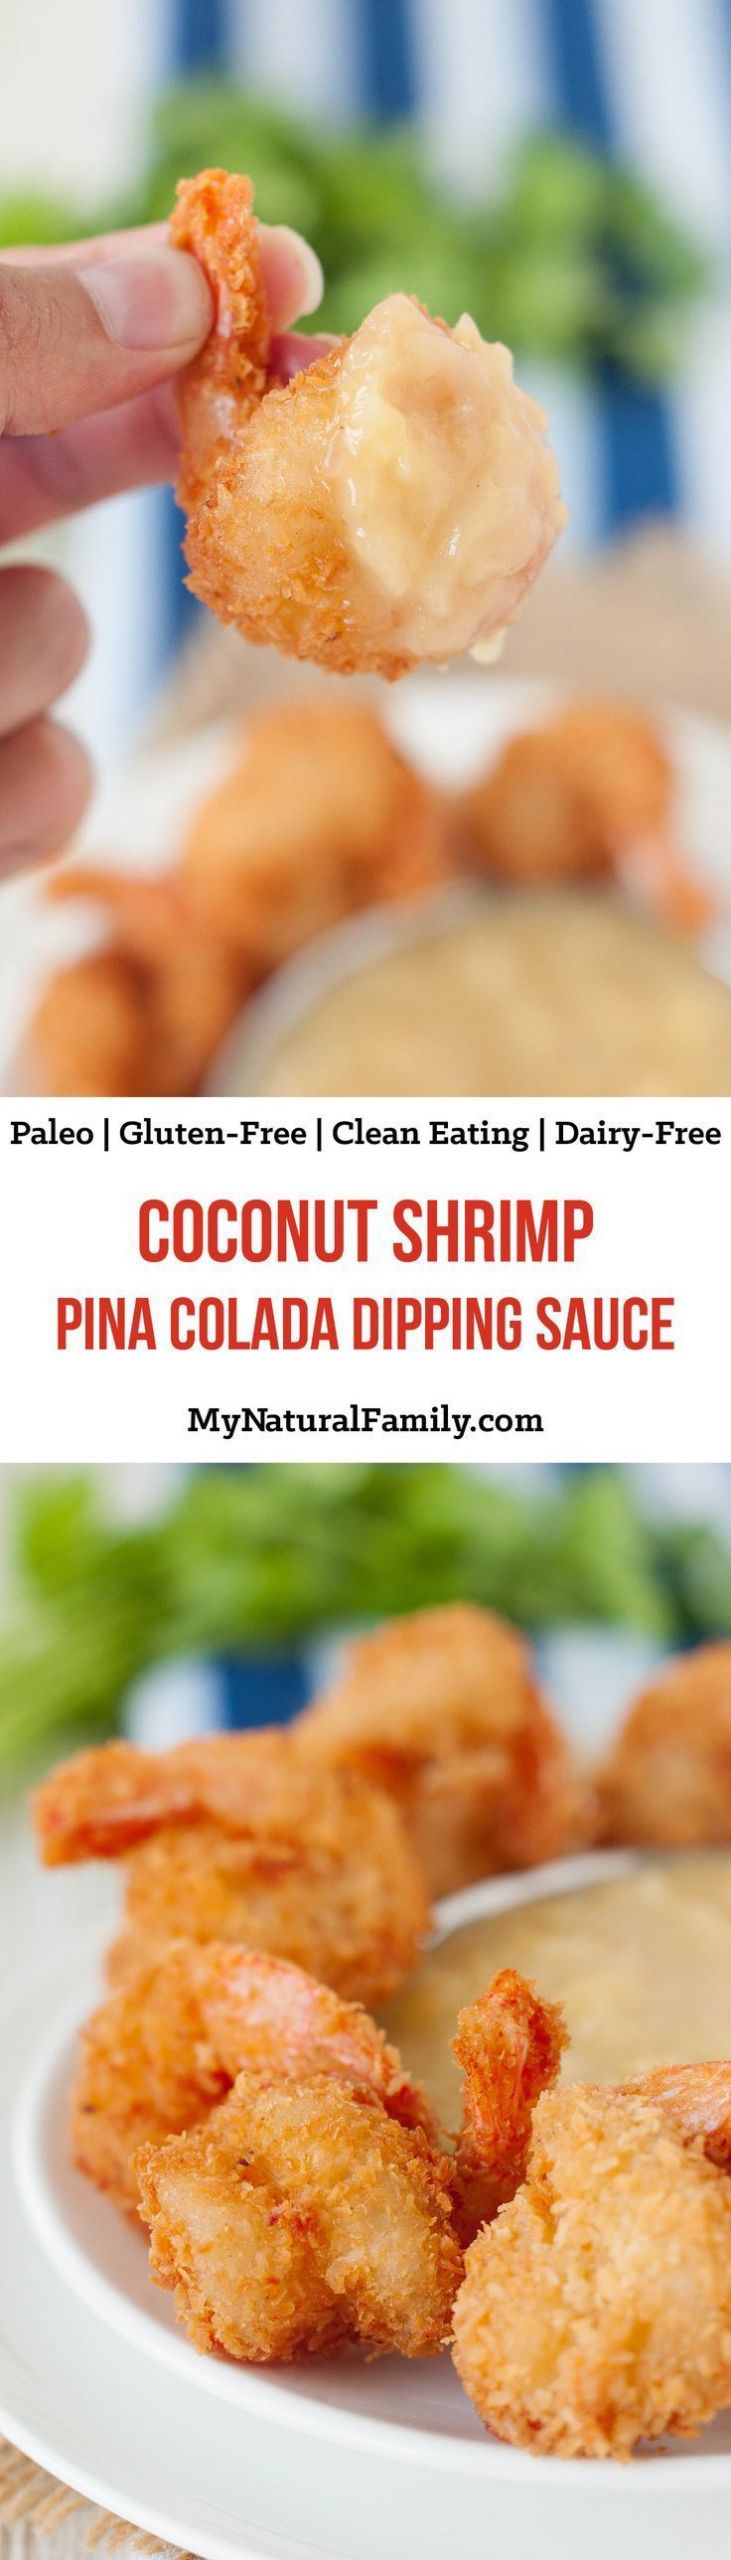 Paleo Shrimp Recipes With Coconut Milk
 Paleo Coconut Shrimp with Pina Colada Dipping Sauce